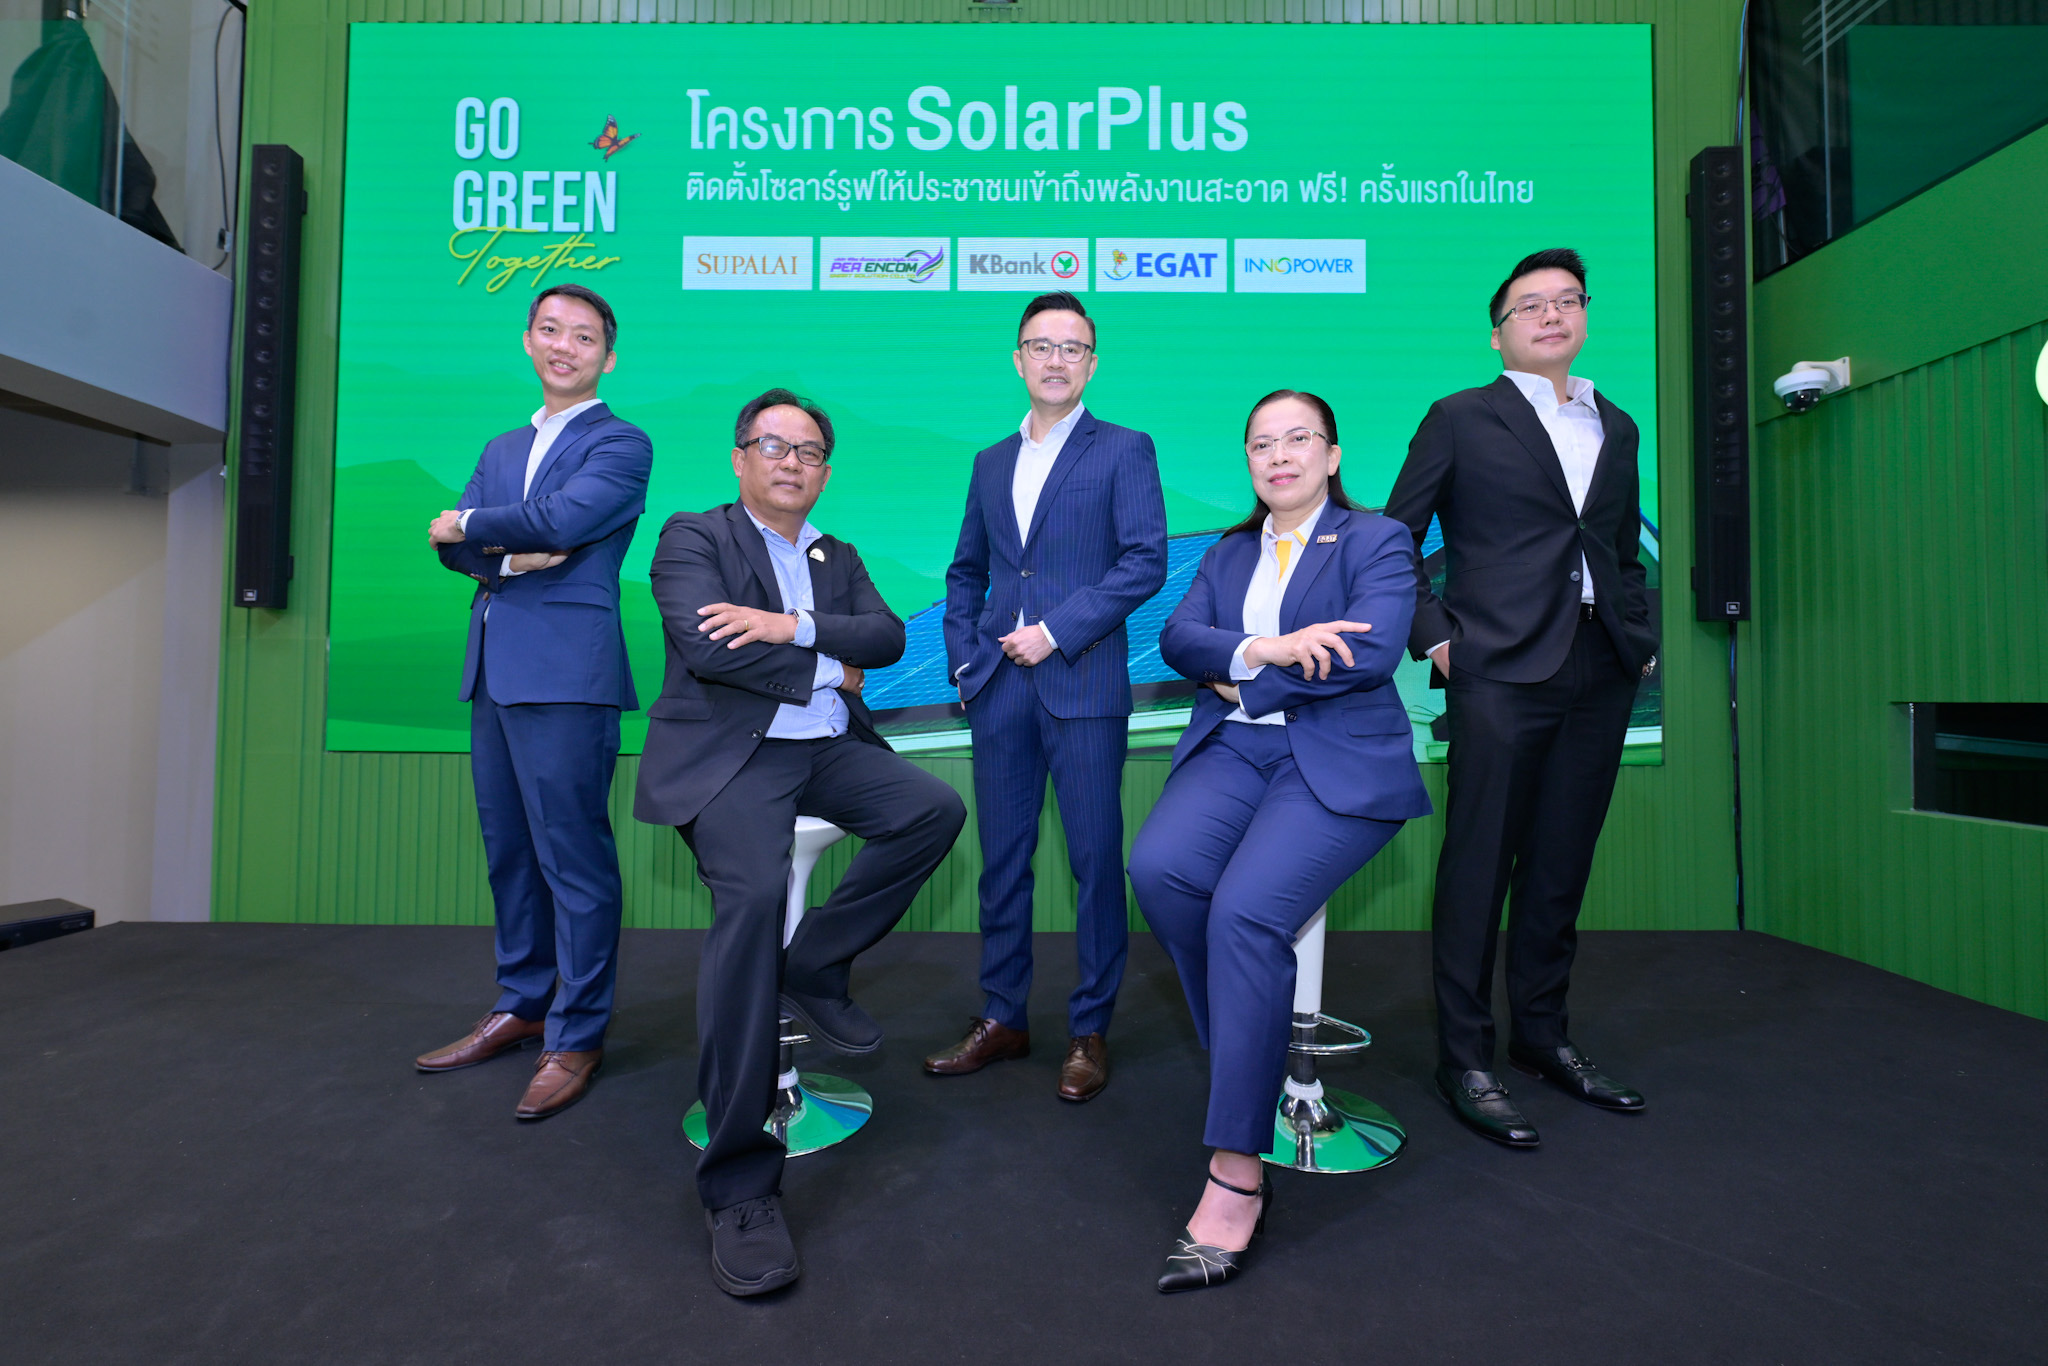 กสิกรไทย เดินหน้า GO GREEN Together ต่อเนื่อง จับมือ 4 พันธมิตร เปิดตัวโครงการ SolarPlus  ตั้งเป้าติดโซลาร์รูฟให้ประชาชนเข้าถึงพลังงานสะอาด ฟรี! 500,000 หลังภายใน 5 ปี